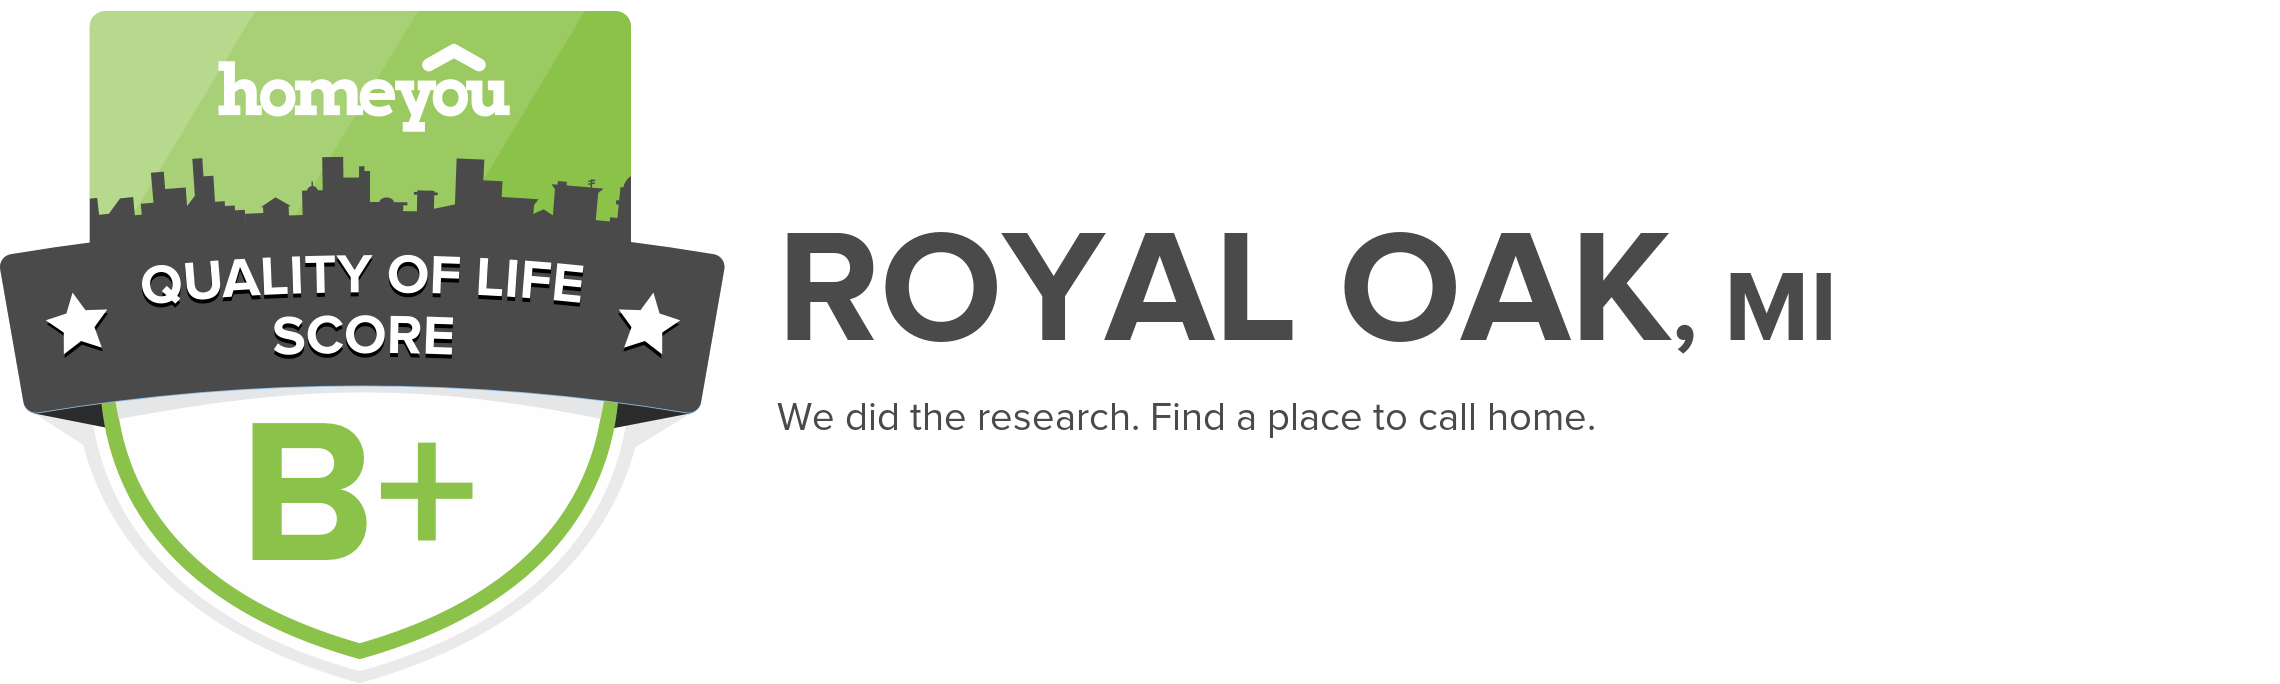 Royal Oak, MI